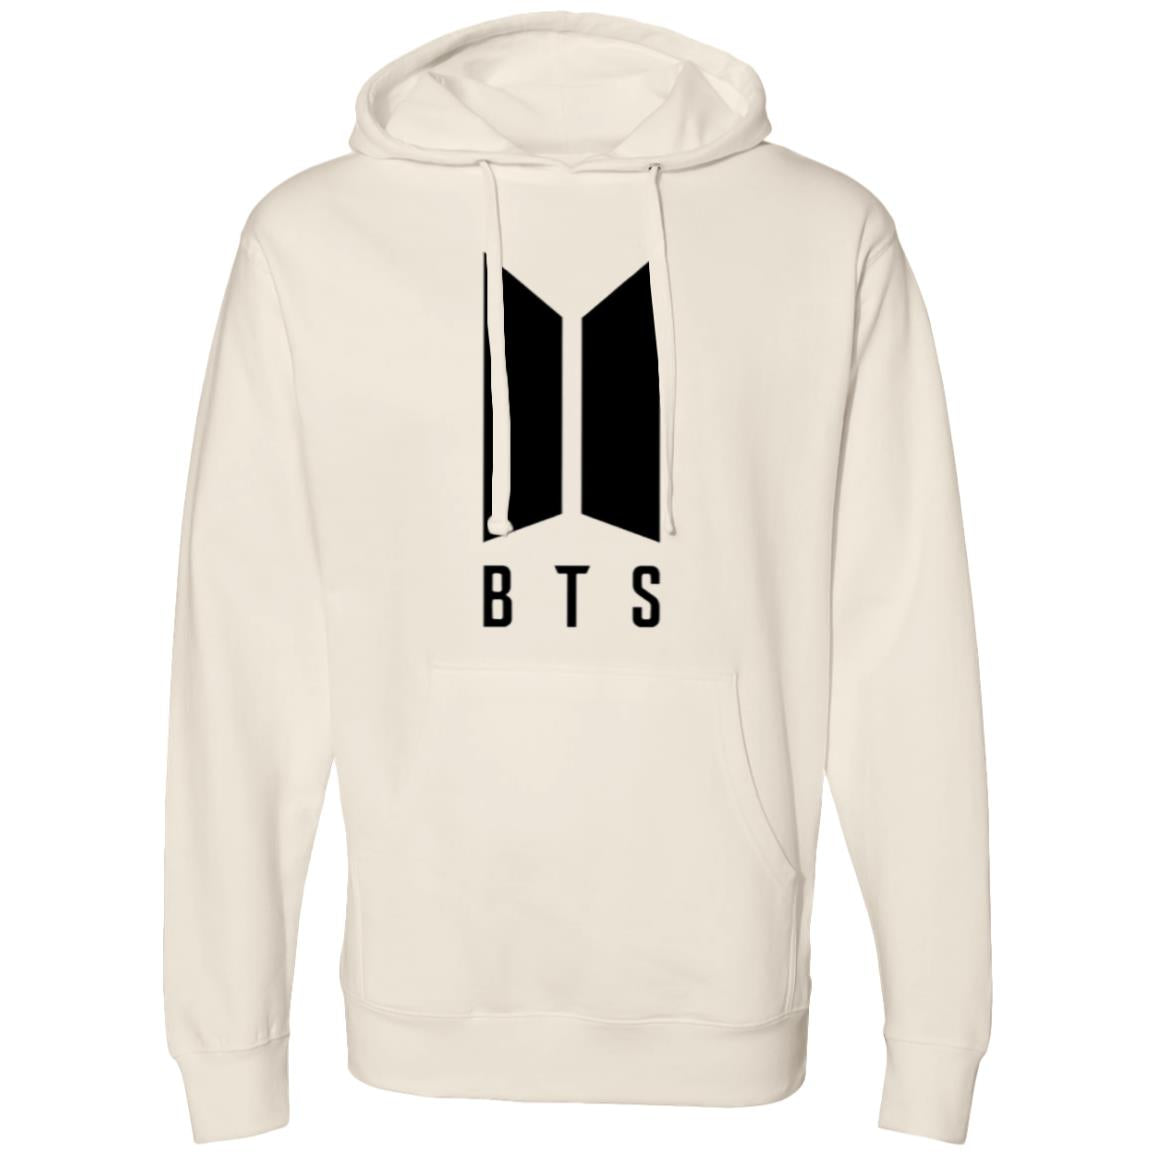 BTS Hoodie Logo Hooded Sweatshirt